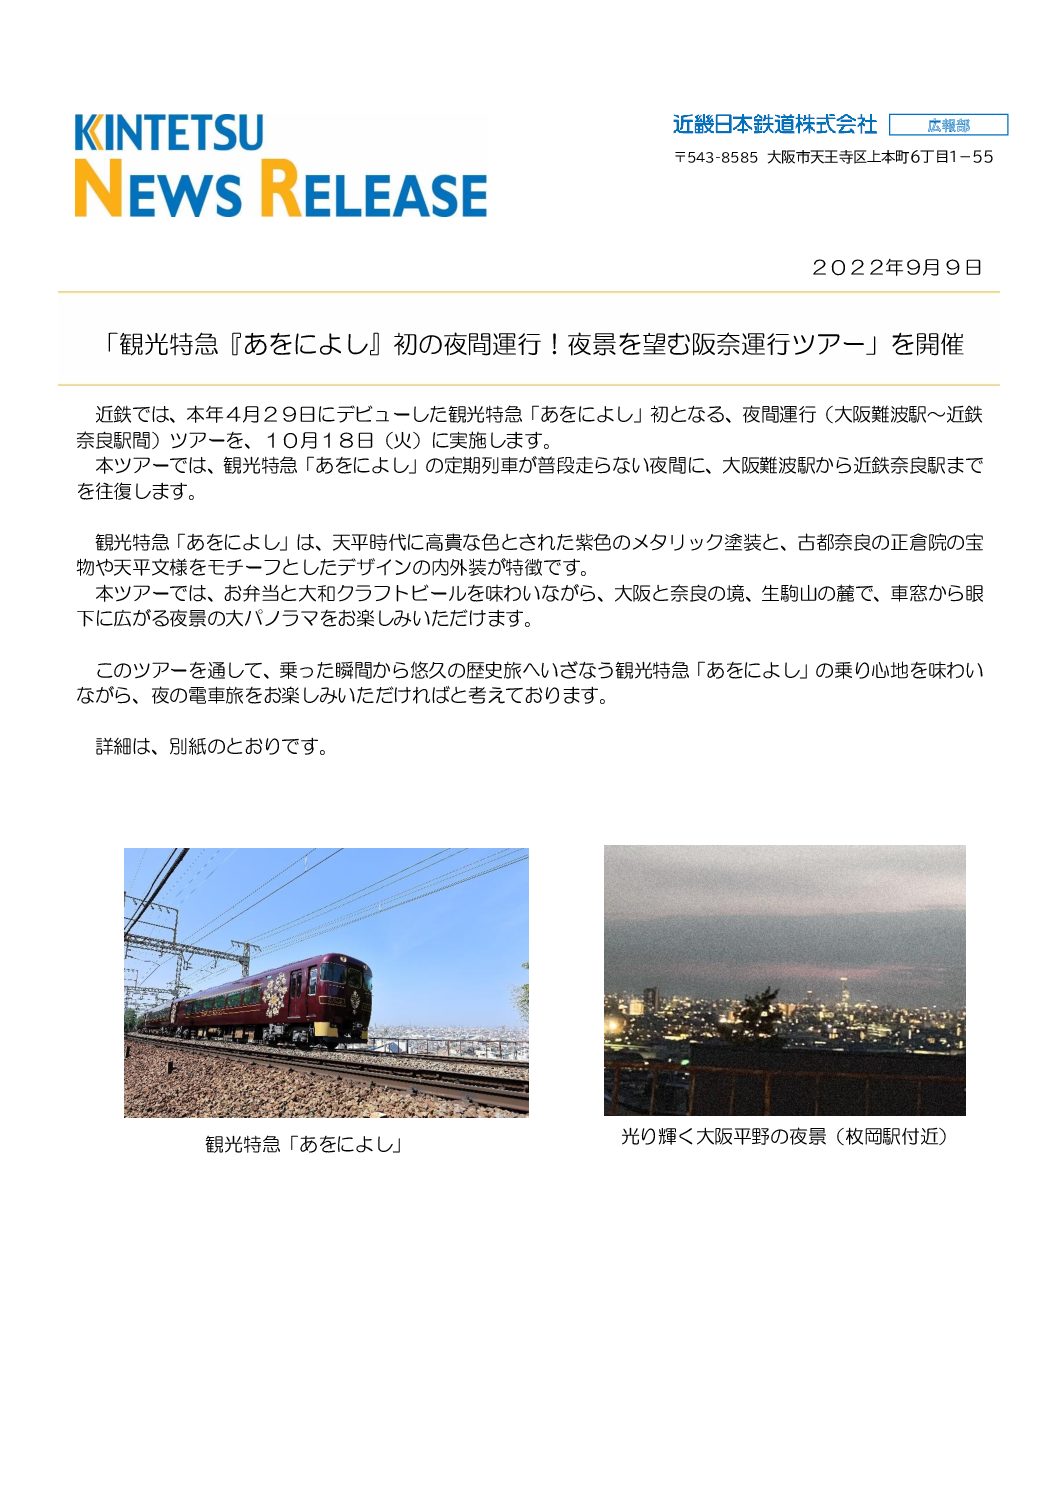 【近鉄】「あにをよし」夜景を望む阪奈運行ツアーの運行を発表。初の夜間ツアーに